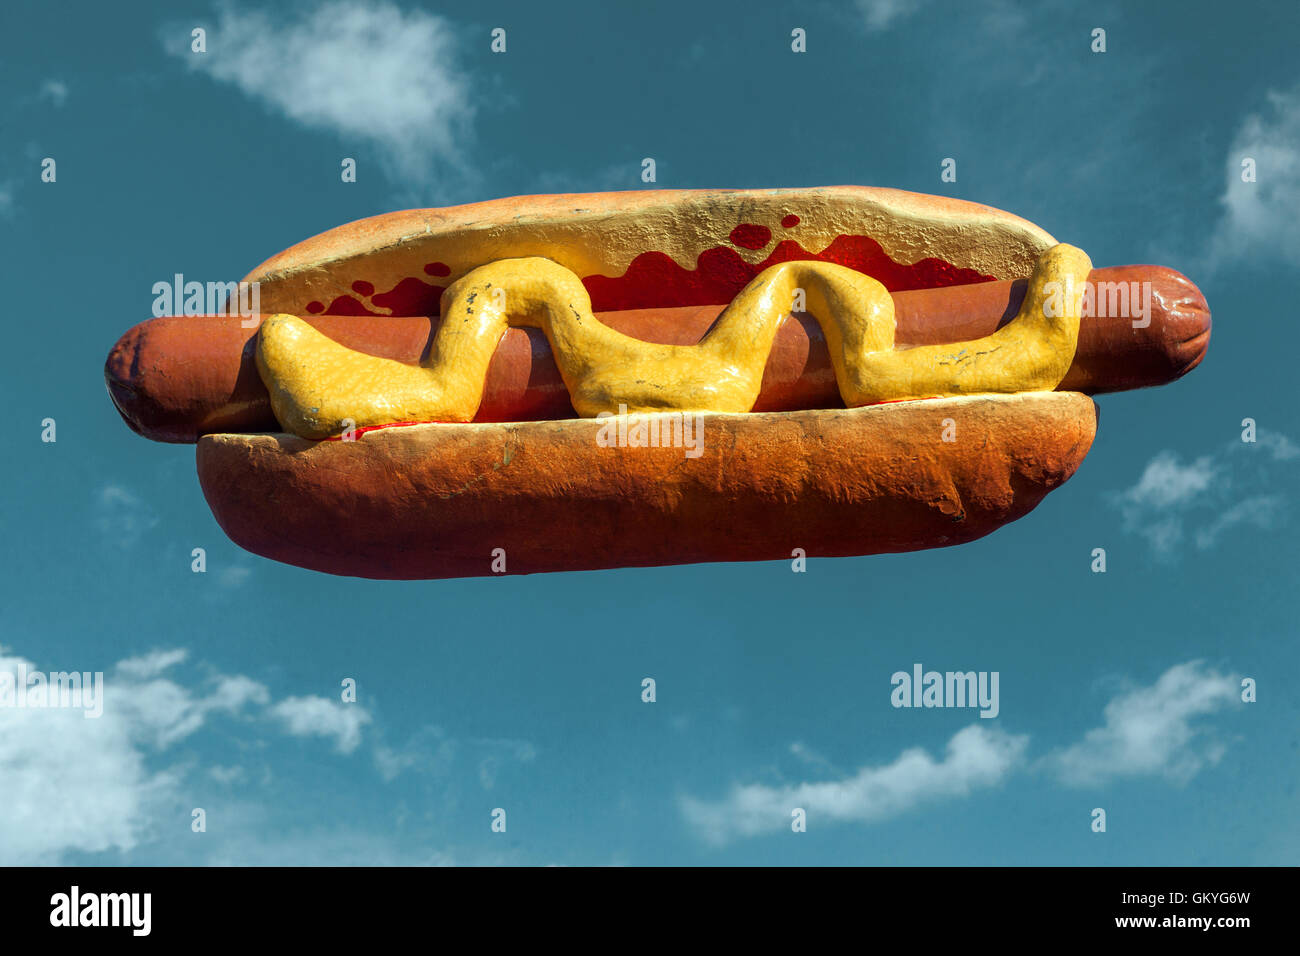 Flying Hot Dog blue sky background Stock Photo